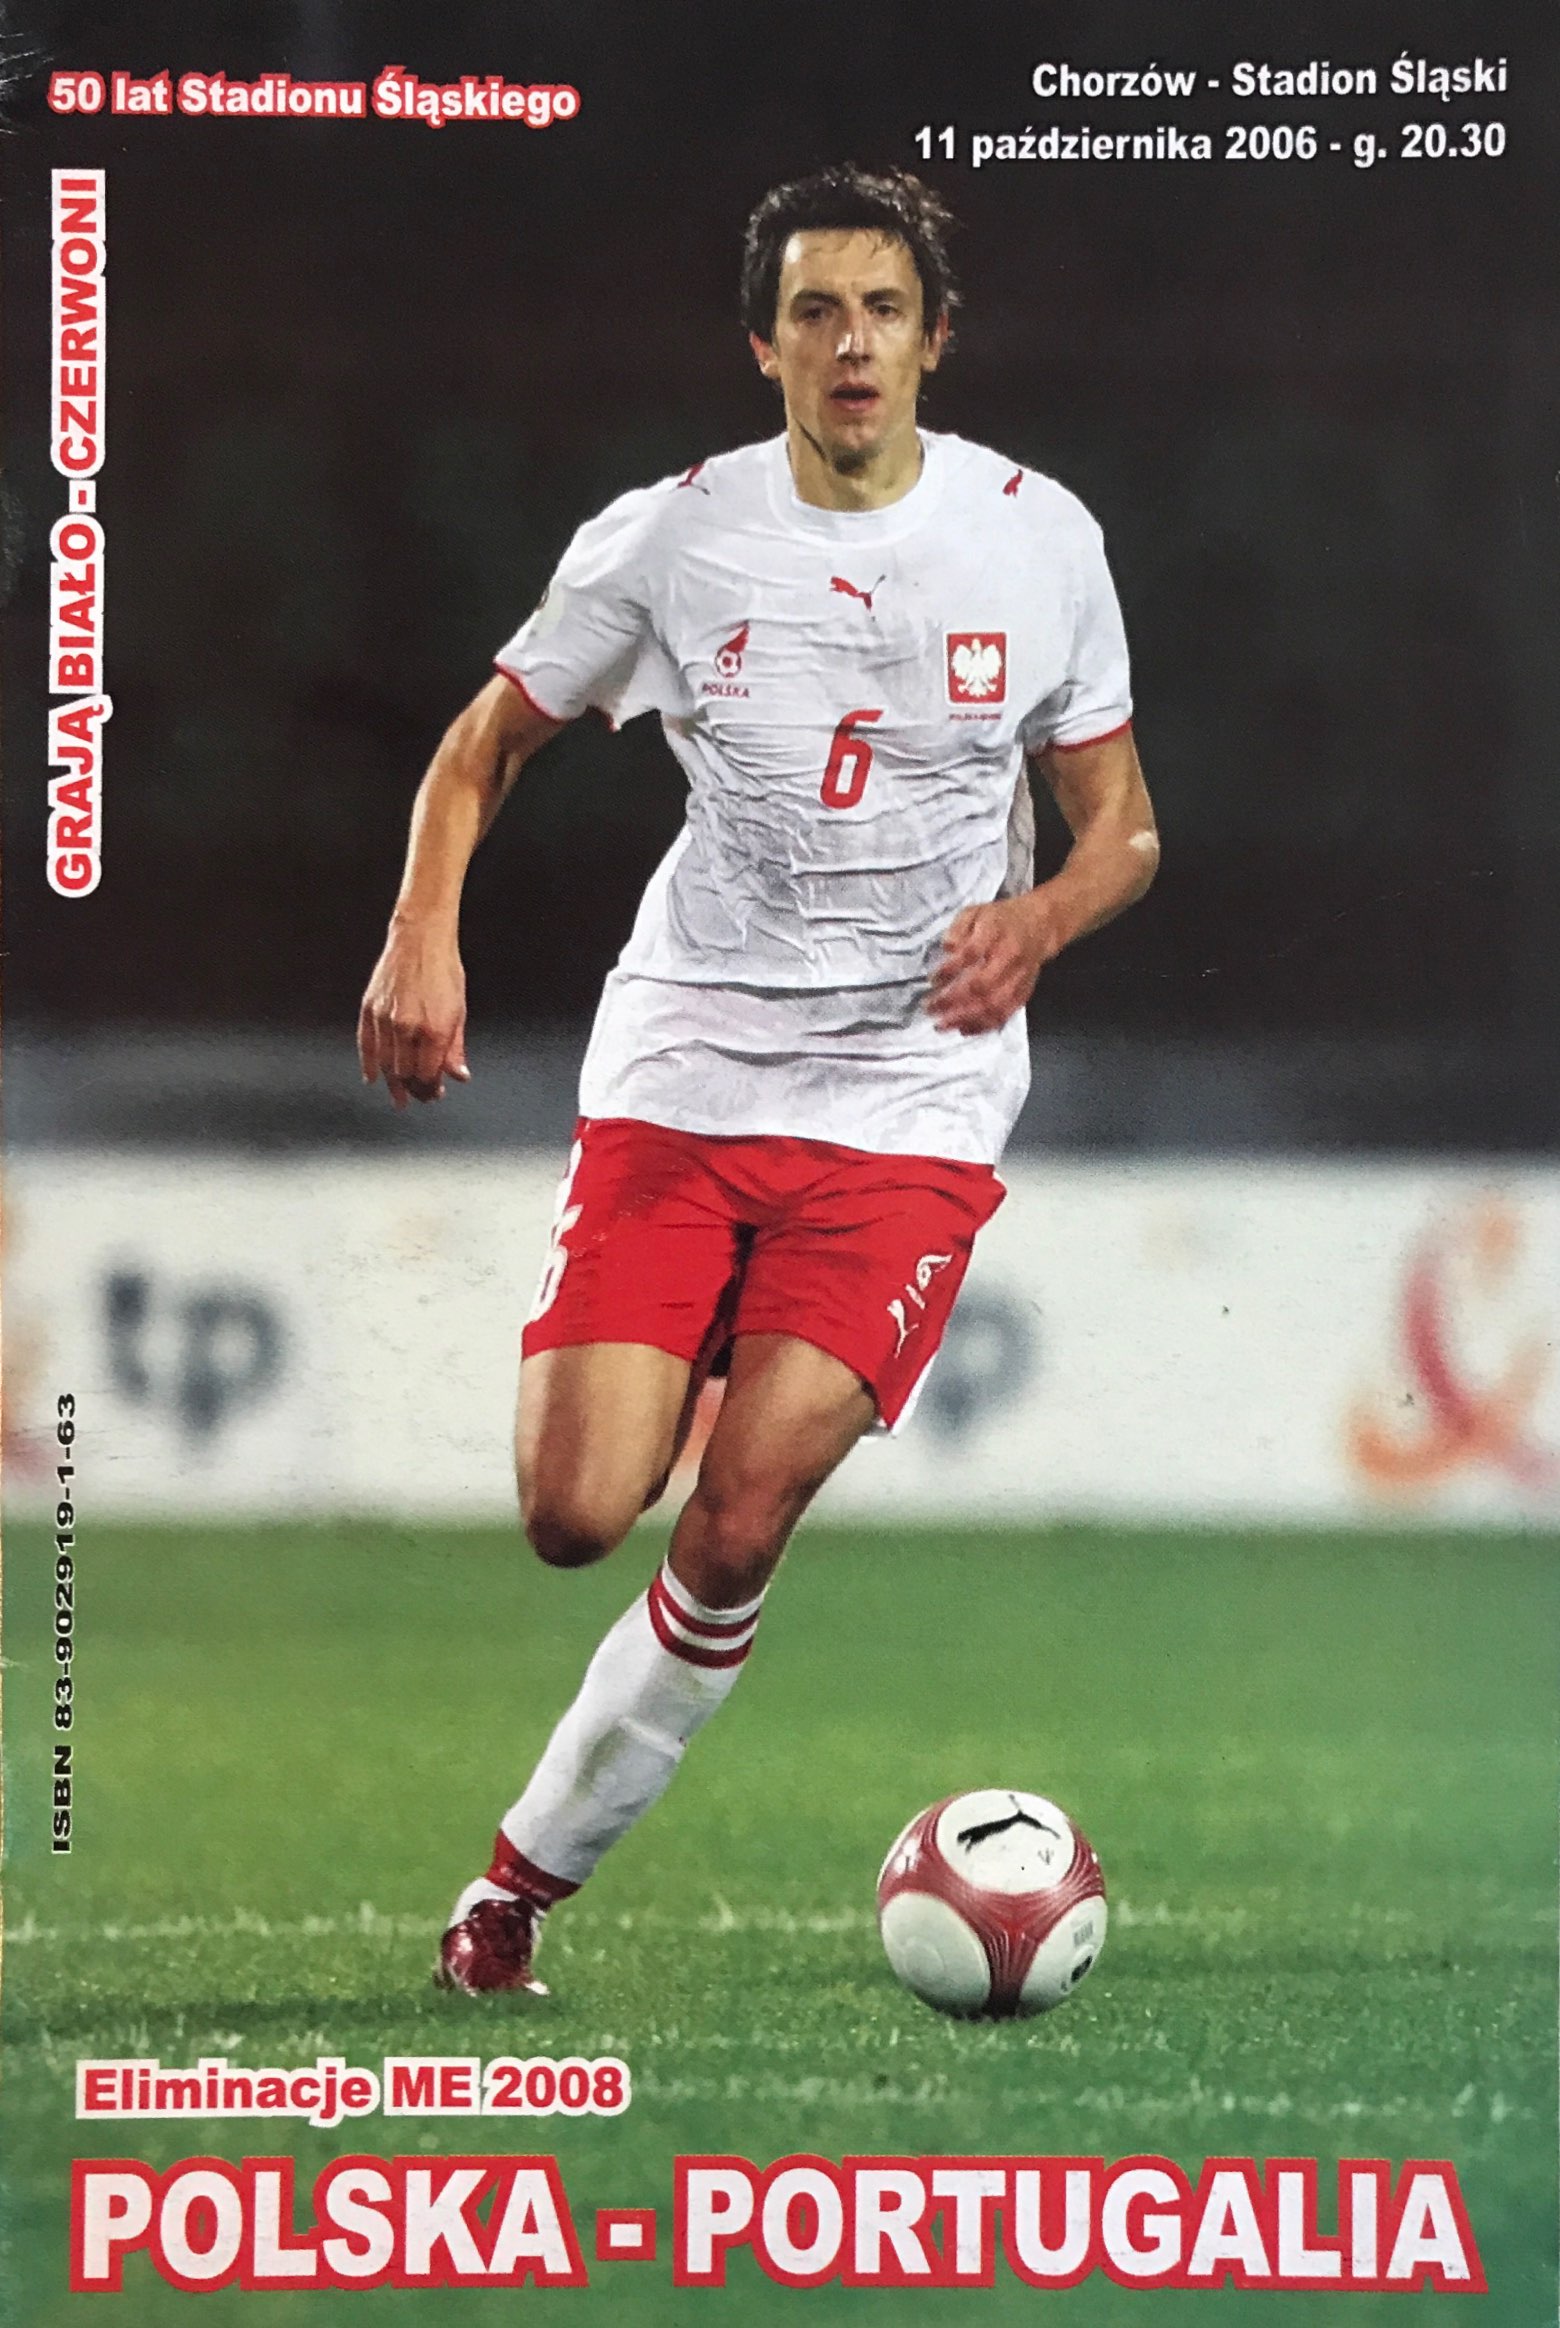 Program meczowy Polska - Portugalia 2:1 (11.10.2006).